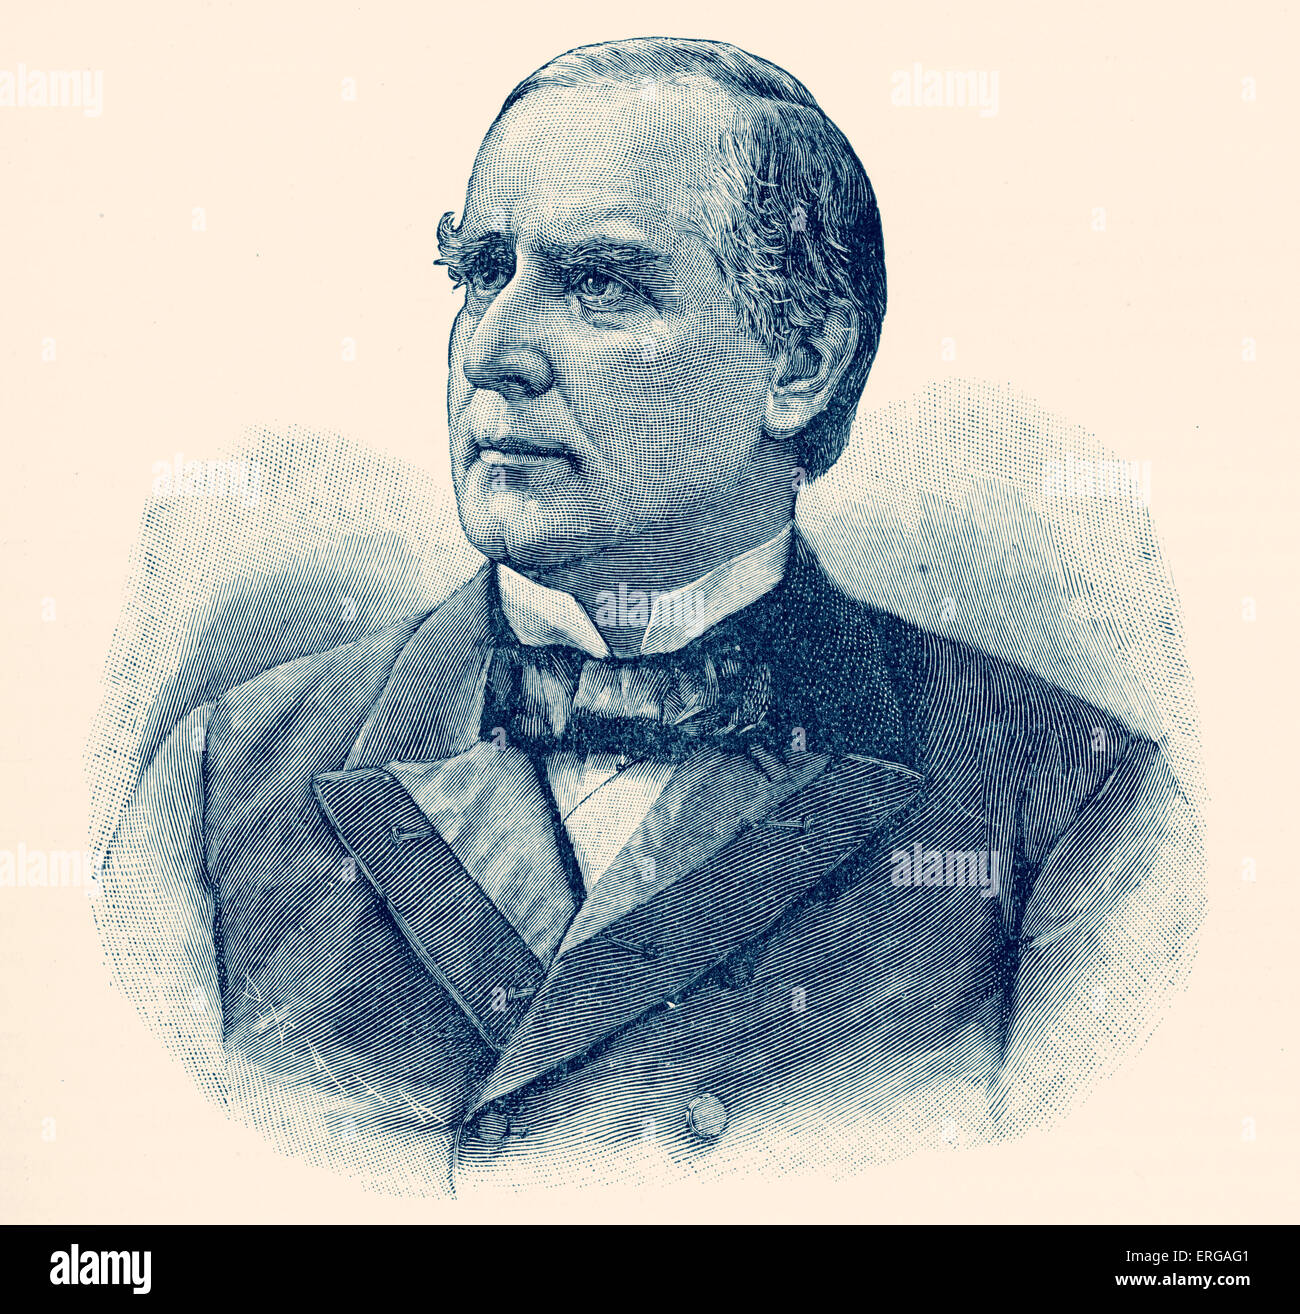 Präsident McKinley, 25. Präsident der USA von 1897 bis 1901. William McKinley, Jr.: Republikaner, B. Januar 1843 - d. September 1901 Stockfoto